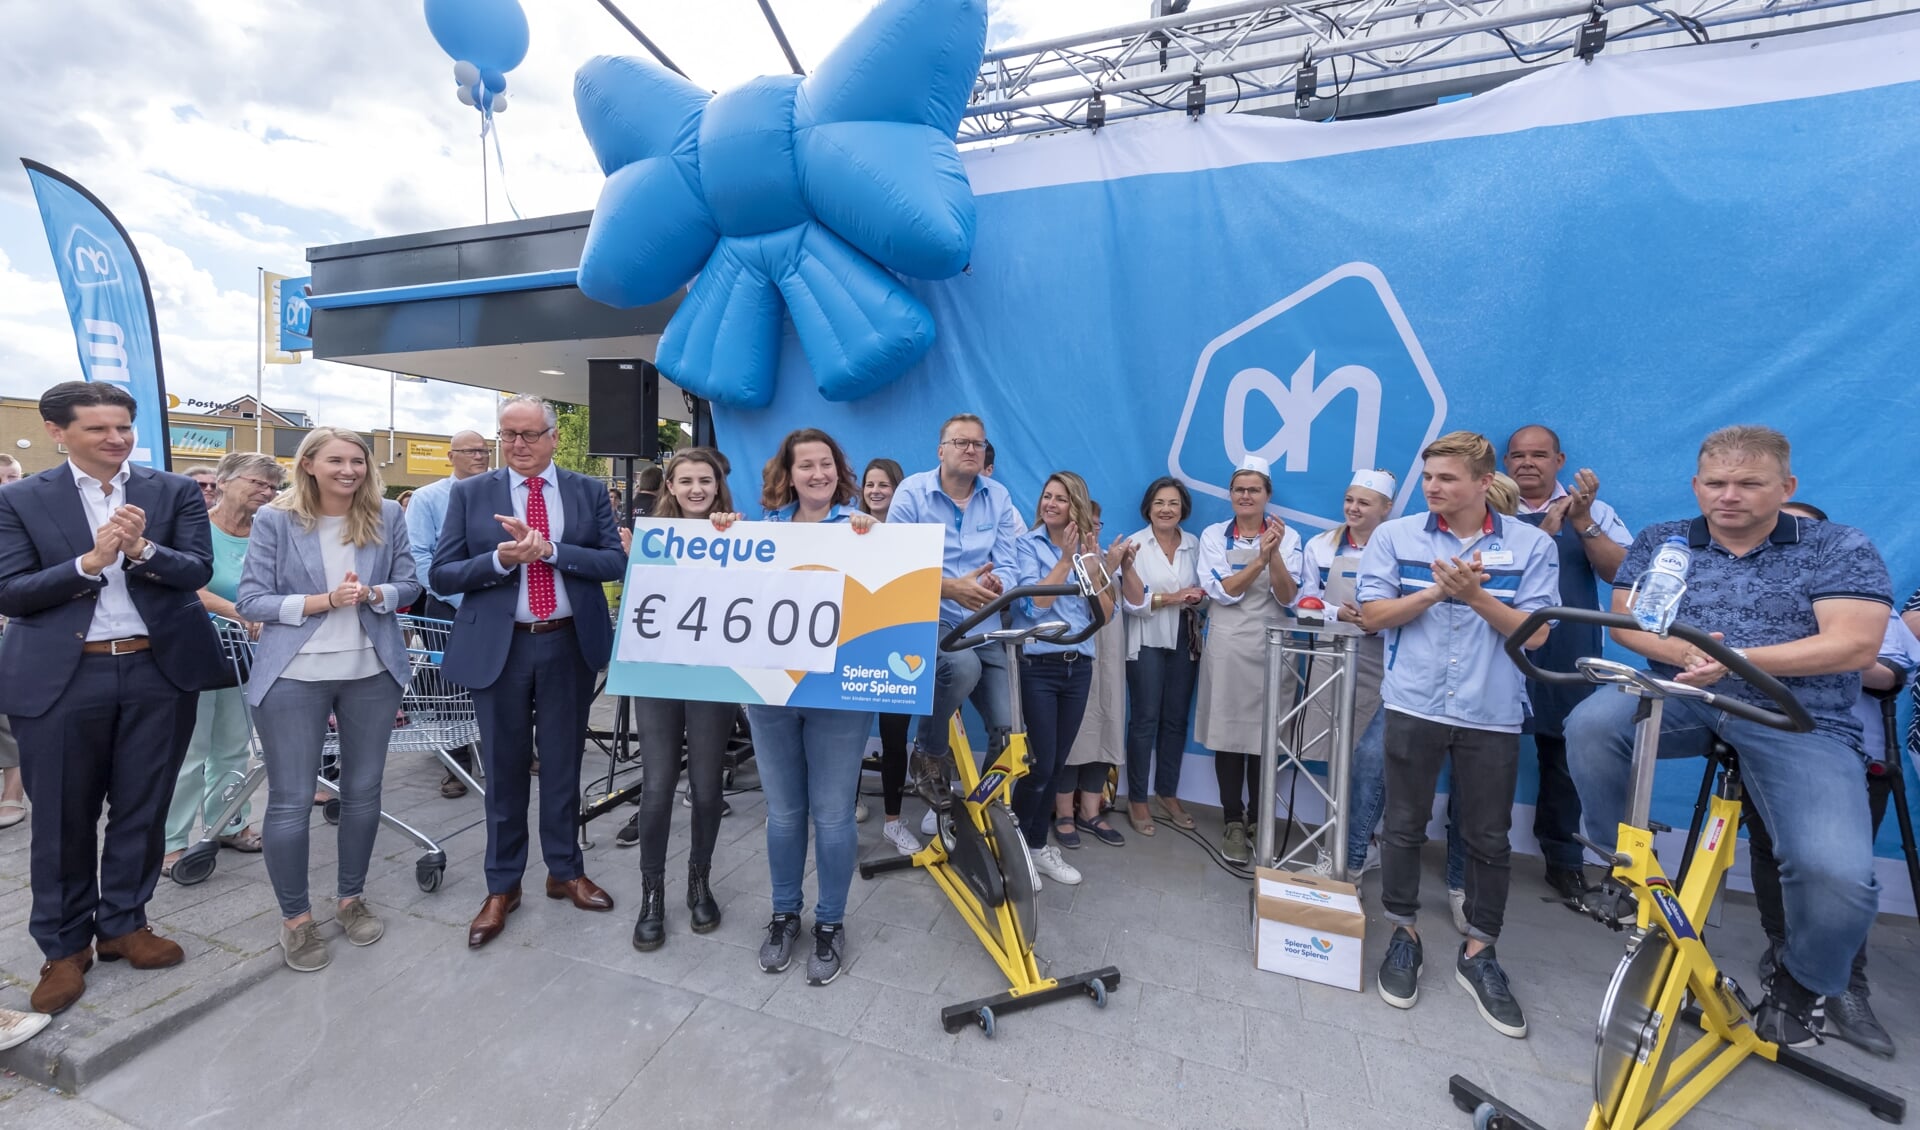 Spinningmarathon bij heropening Albert Heijn Putten leverde 4.600 euro op voor stichting Spieren voor Spieren